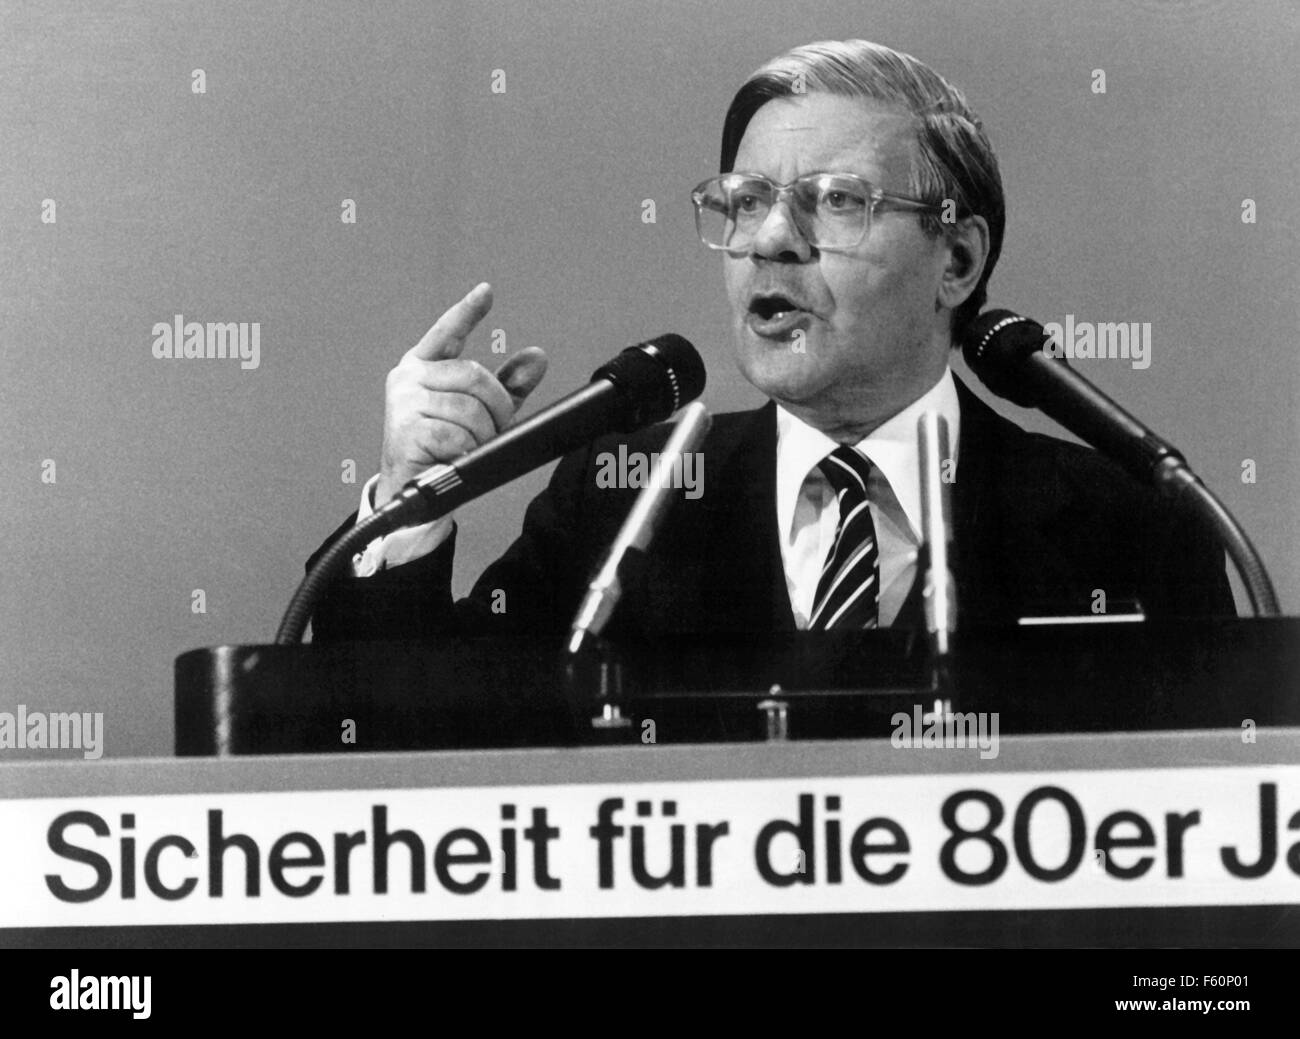 Fichier - Un fichier photo en date du 04 décembre 1979 montre chancelier allemand Helmut Schmidt (SPD) donnant un discours sur "icherheit fuer die 80er Jahre' (lit. la sécurité pour les années 80) à une réunion du parti SPD à Berlin, Allemagne. PHOTO : KONRAD GIEHR/DPA) Banque D'Images